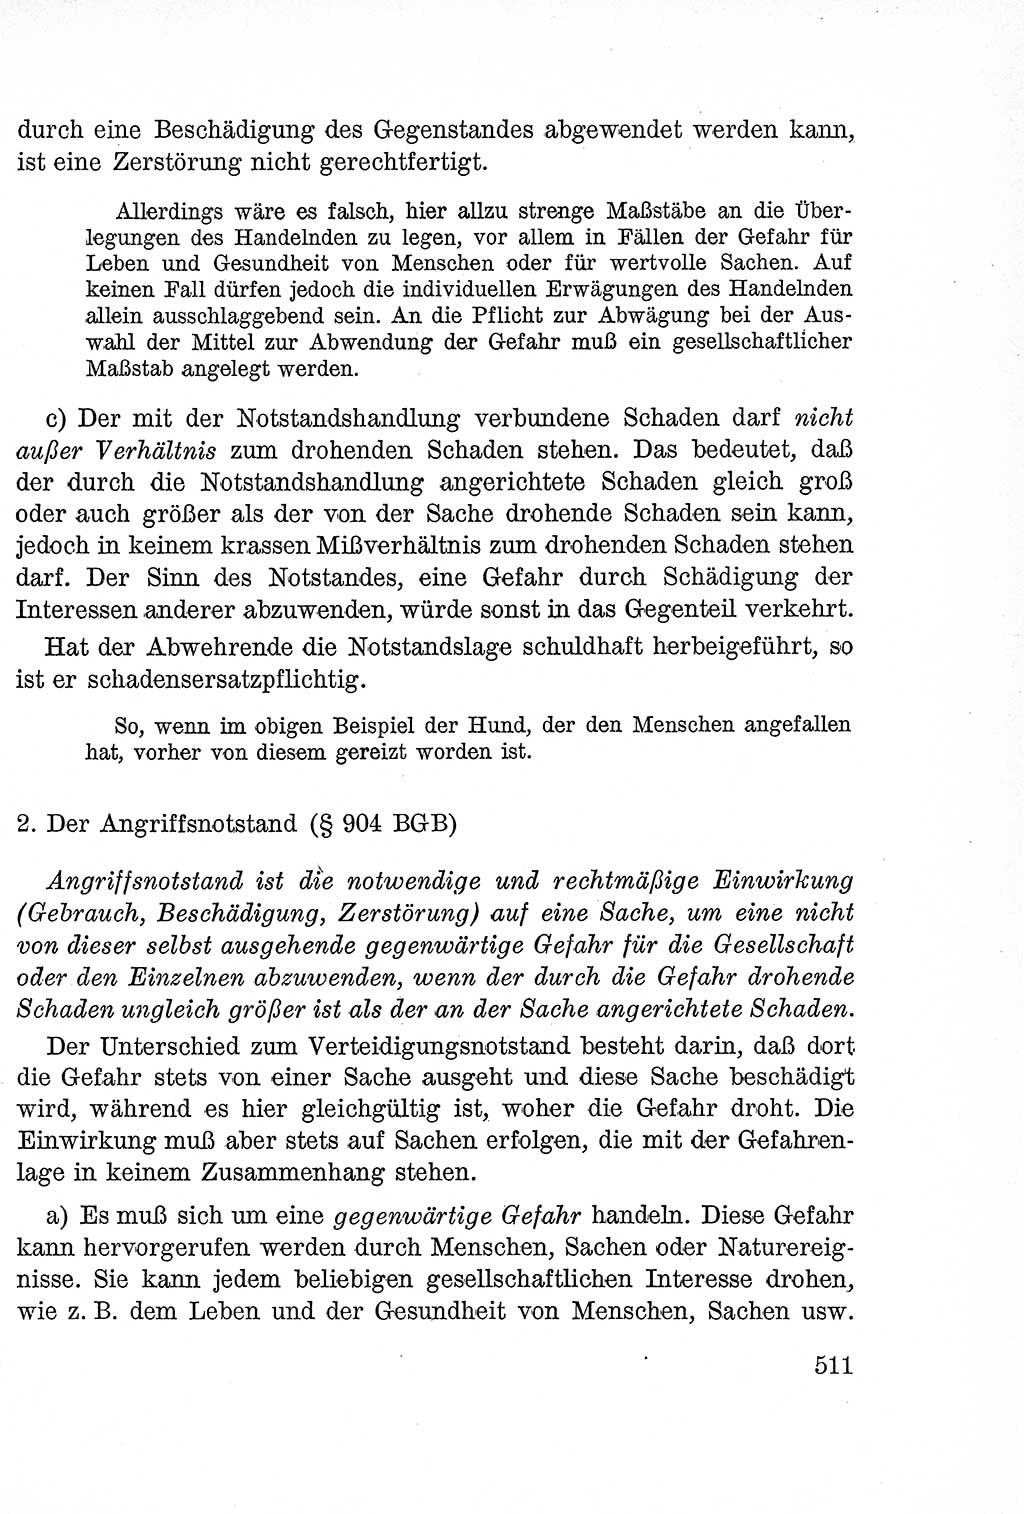 Lehrbuch des Strafrechts der Deutschen Demokratischen Republik (DDR), Allgemeiner Teil 1957, Seite 511 (Lb. Strafr. DDR AT 1957, S. 511)